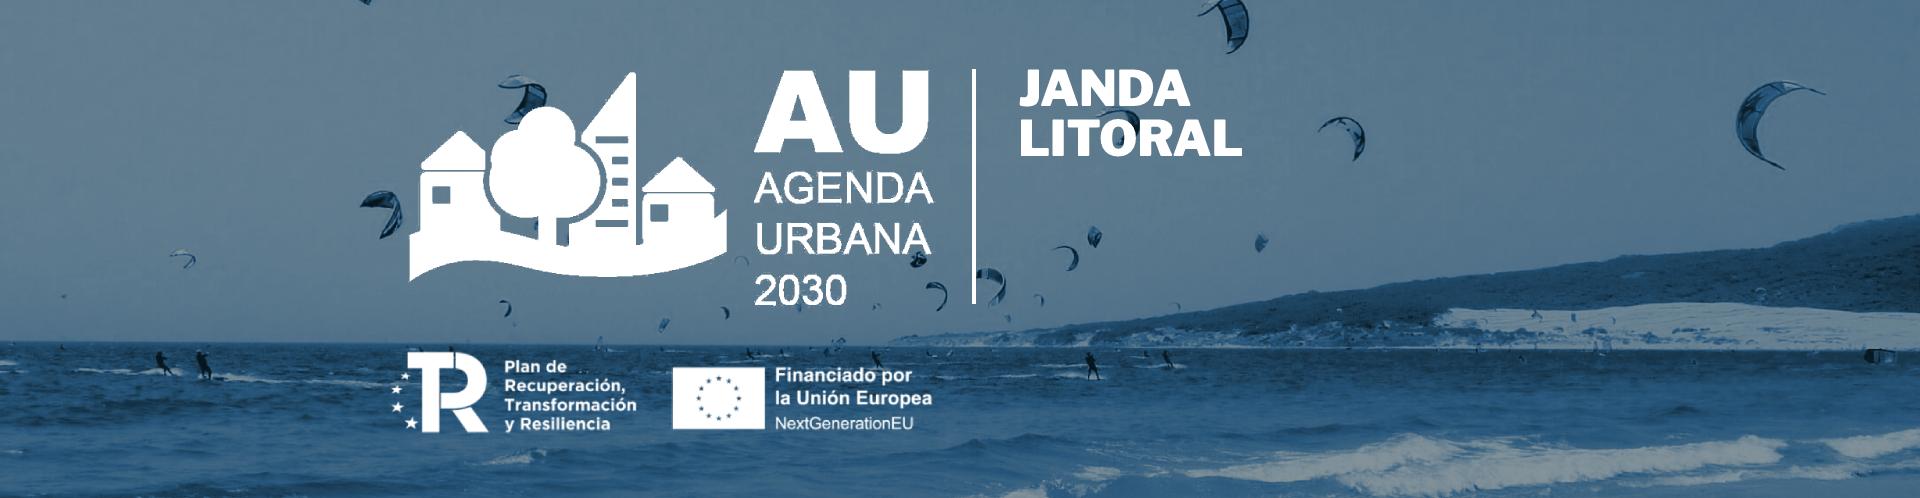 Agenda Urbana 2030 Janda Litoral